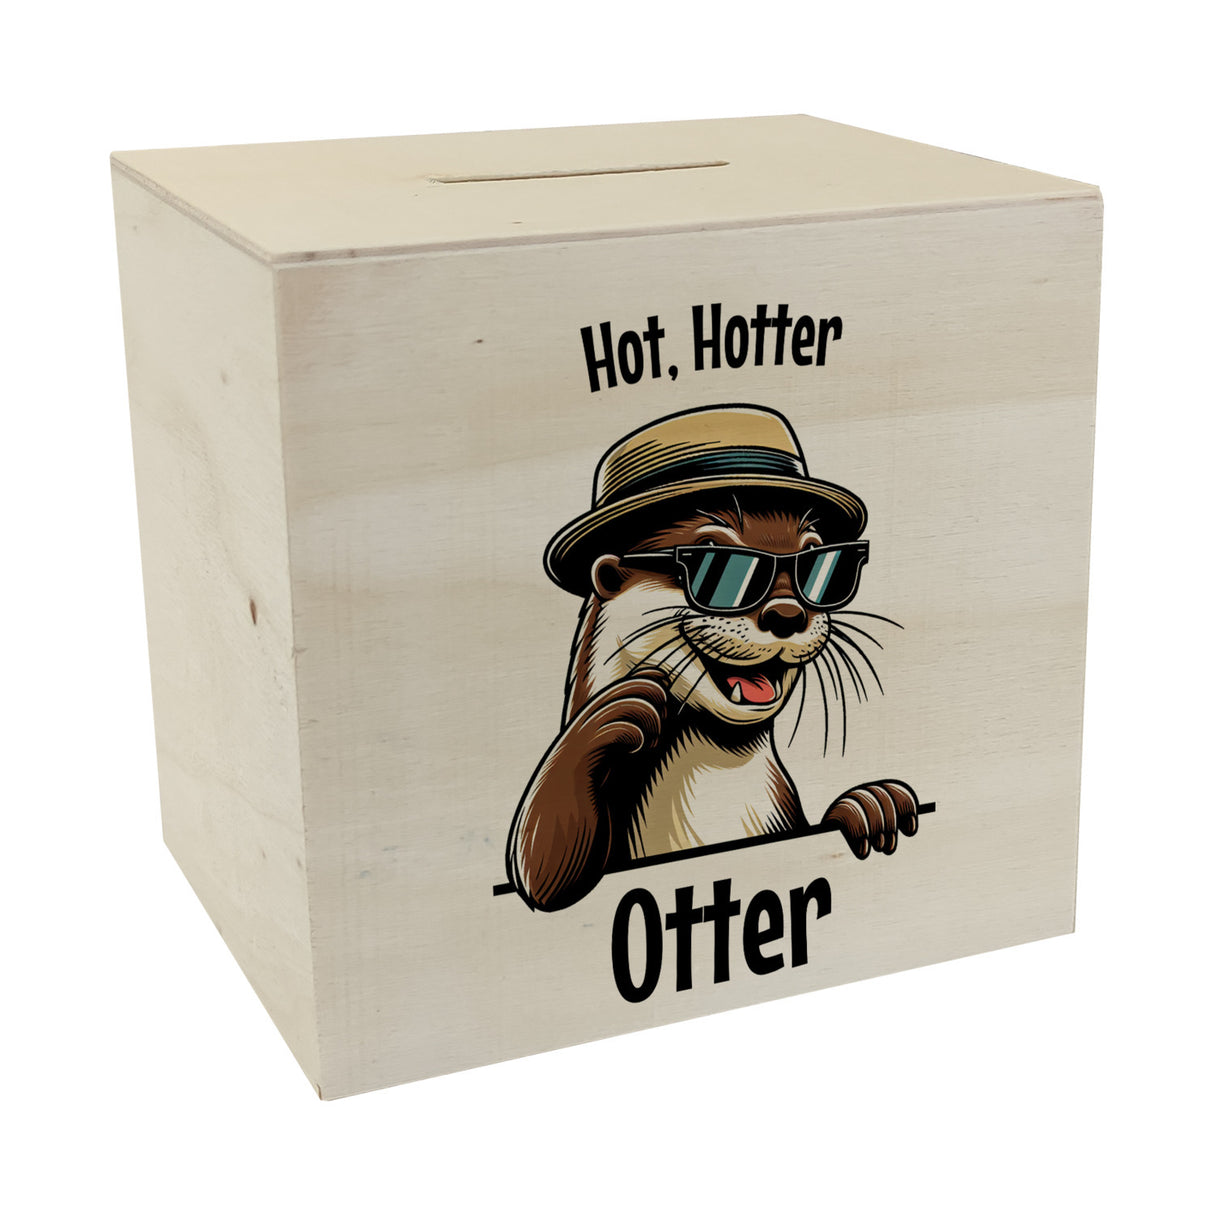 Cooler Otter Spardose mit Spruch Hot Hotter Otter